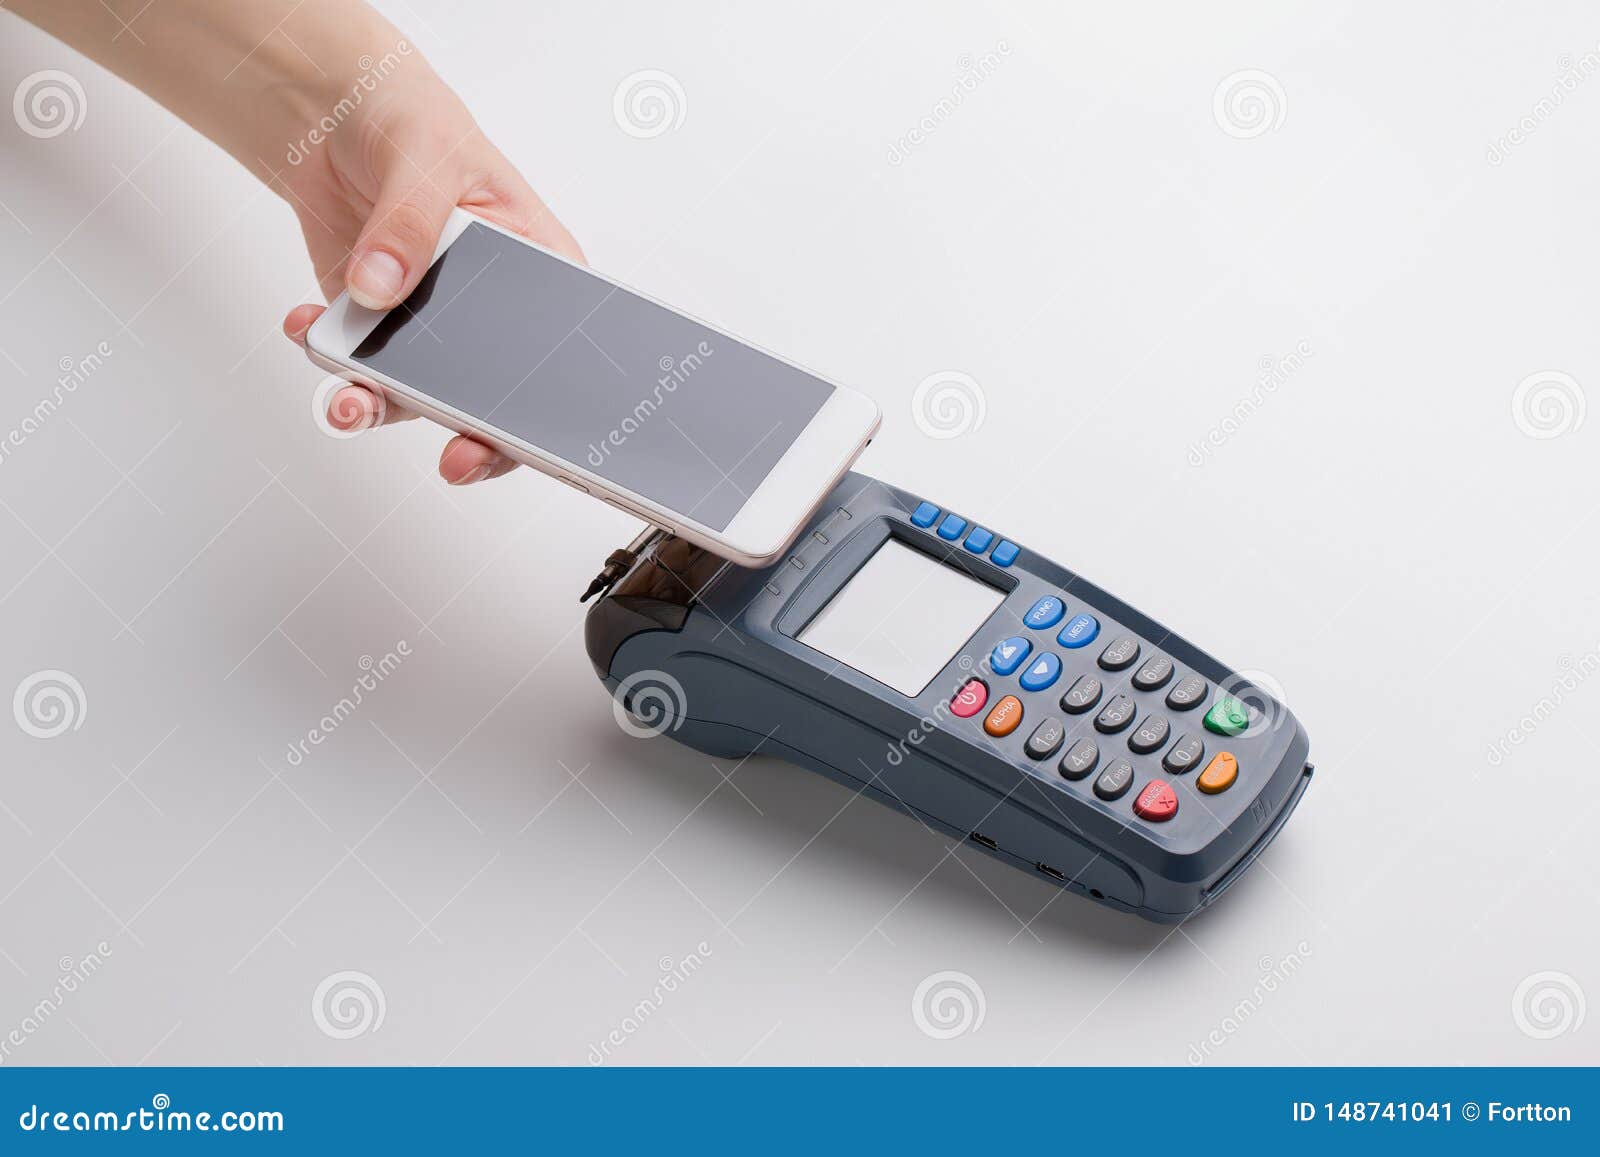 Как сейчас оплачивать покупки. Pax d230 оплата покупки. Оплата покупки через смартфон Юзер флоу. Оплата покупки через смартфон Юзер флоу фото.